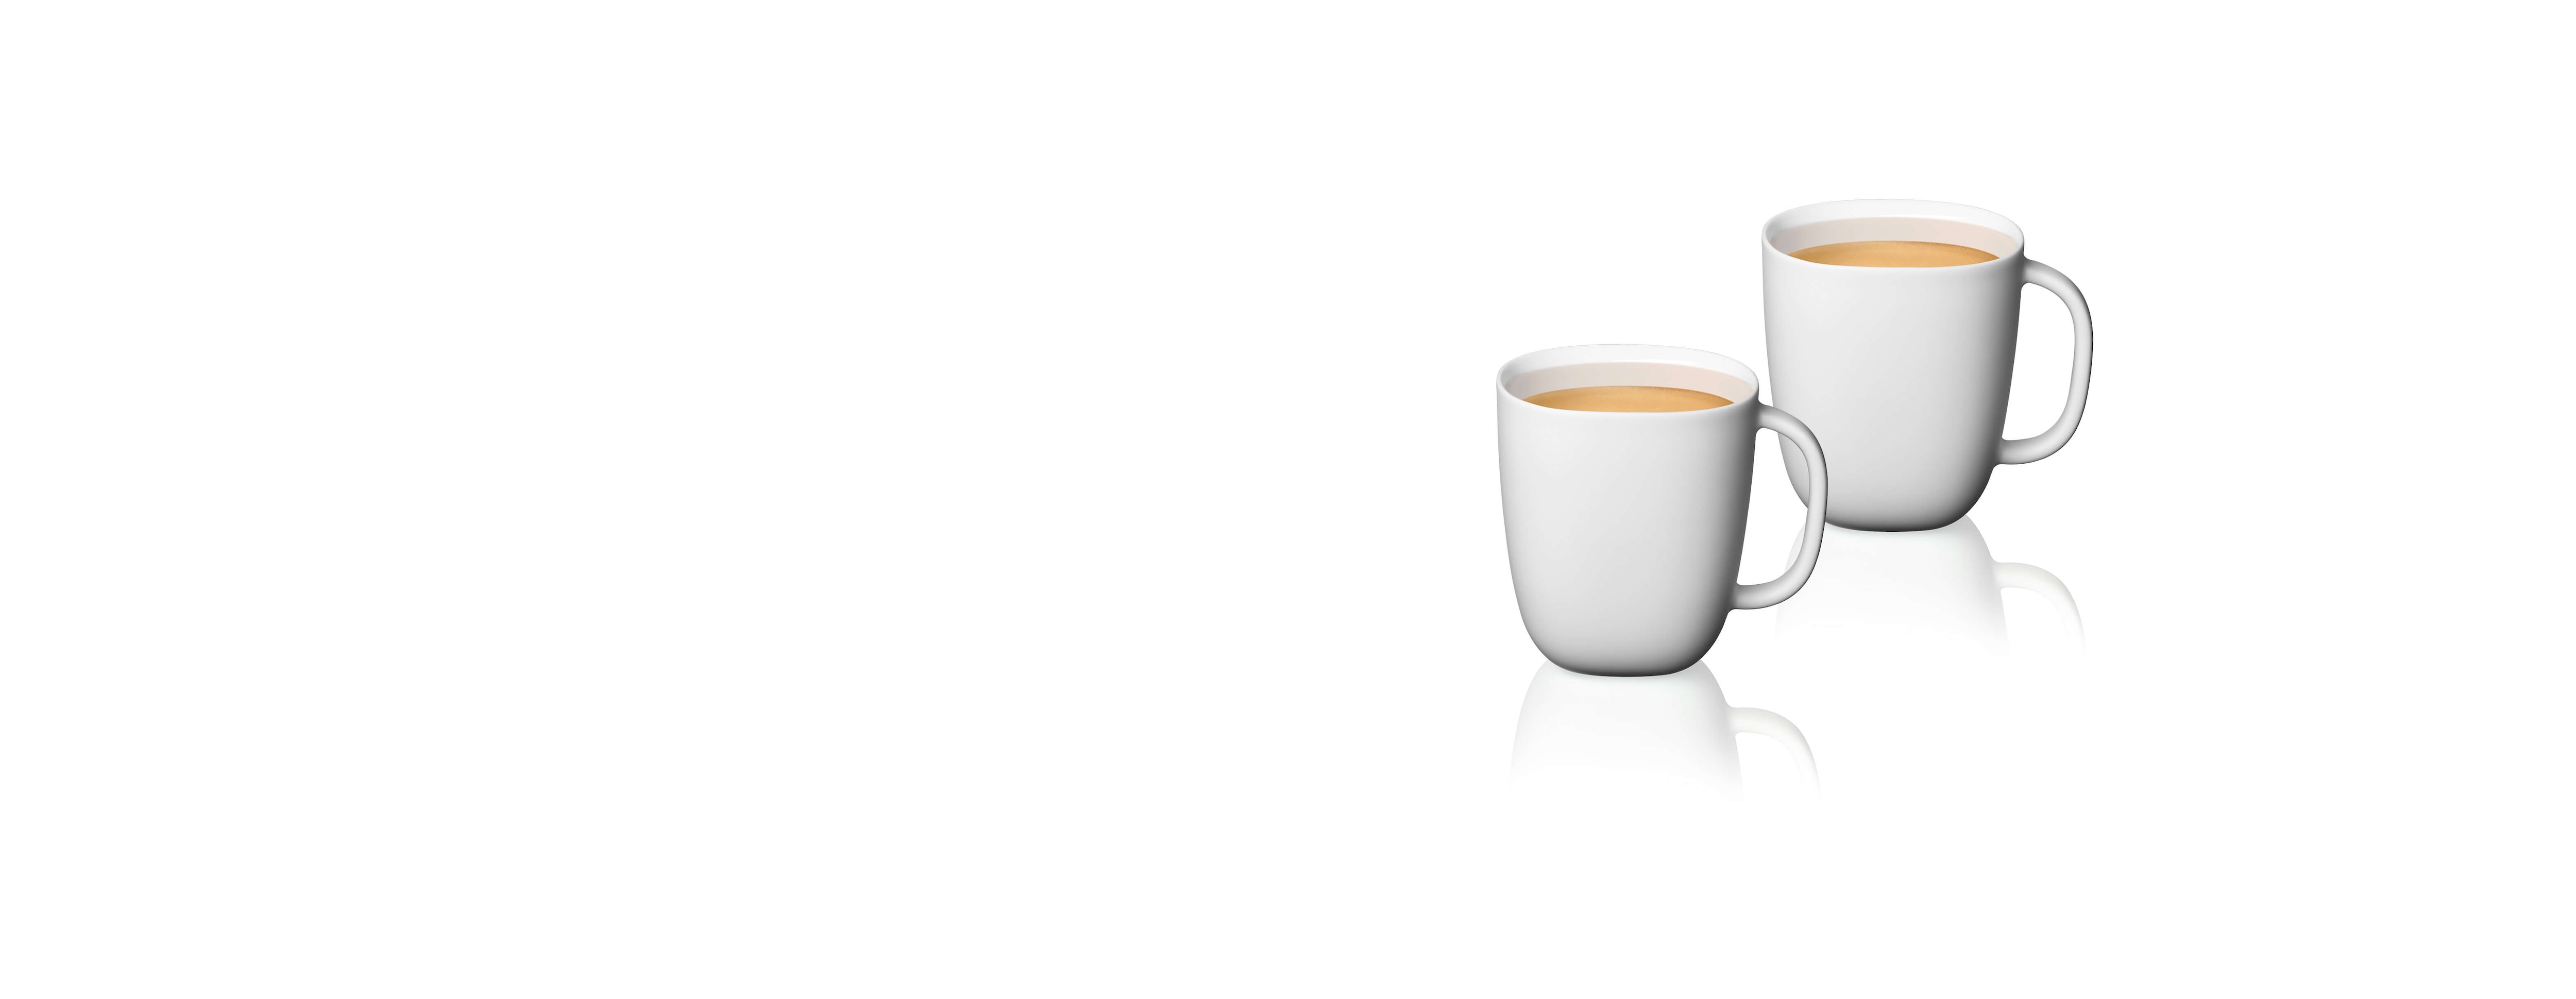 Heb geleerd ga verder mechanisch Koffie mokken | Lume collectie | Nespresso Nederland